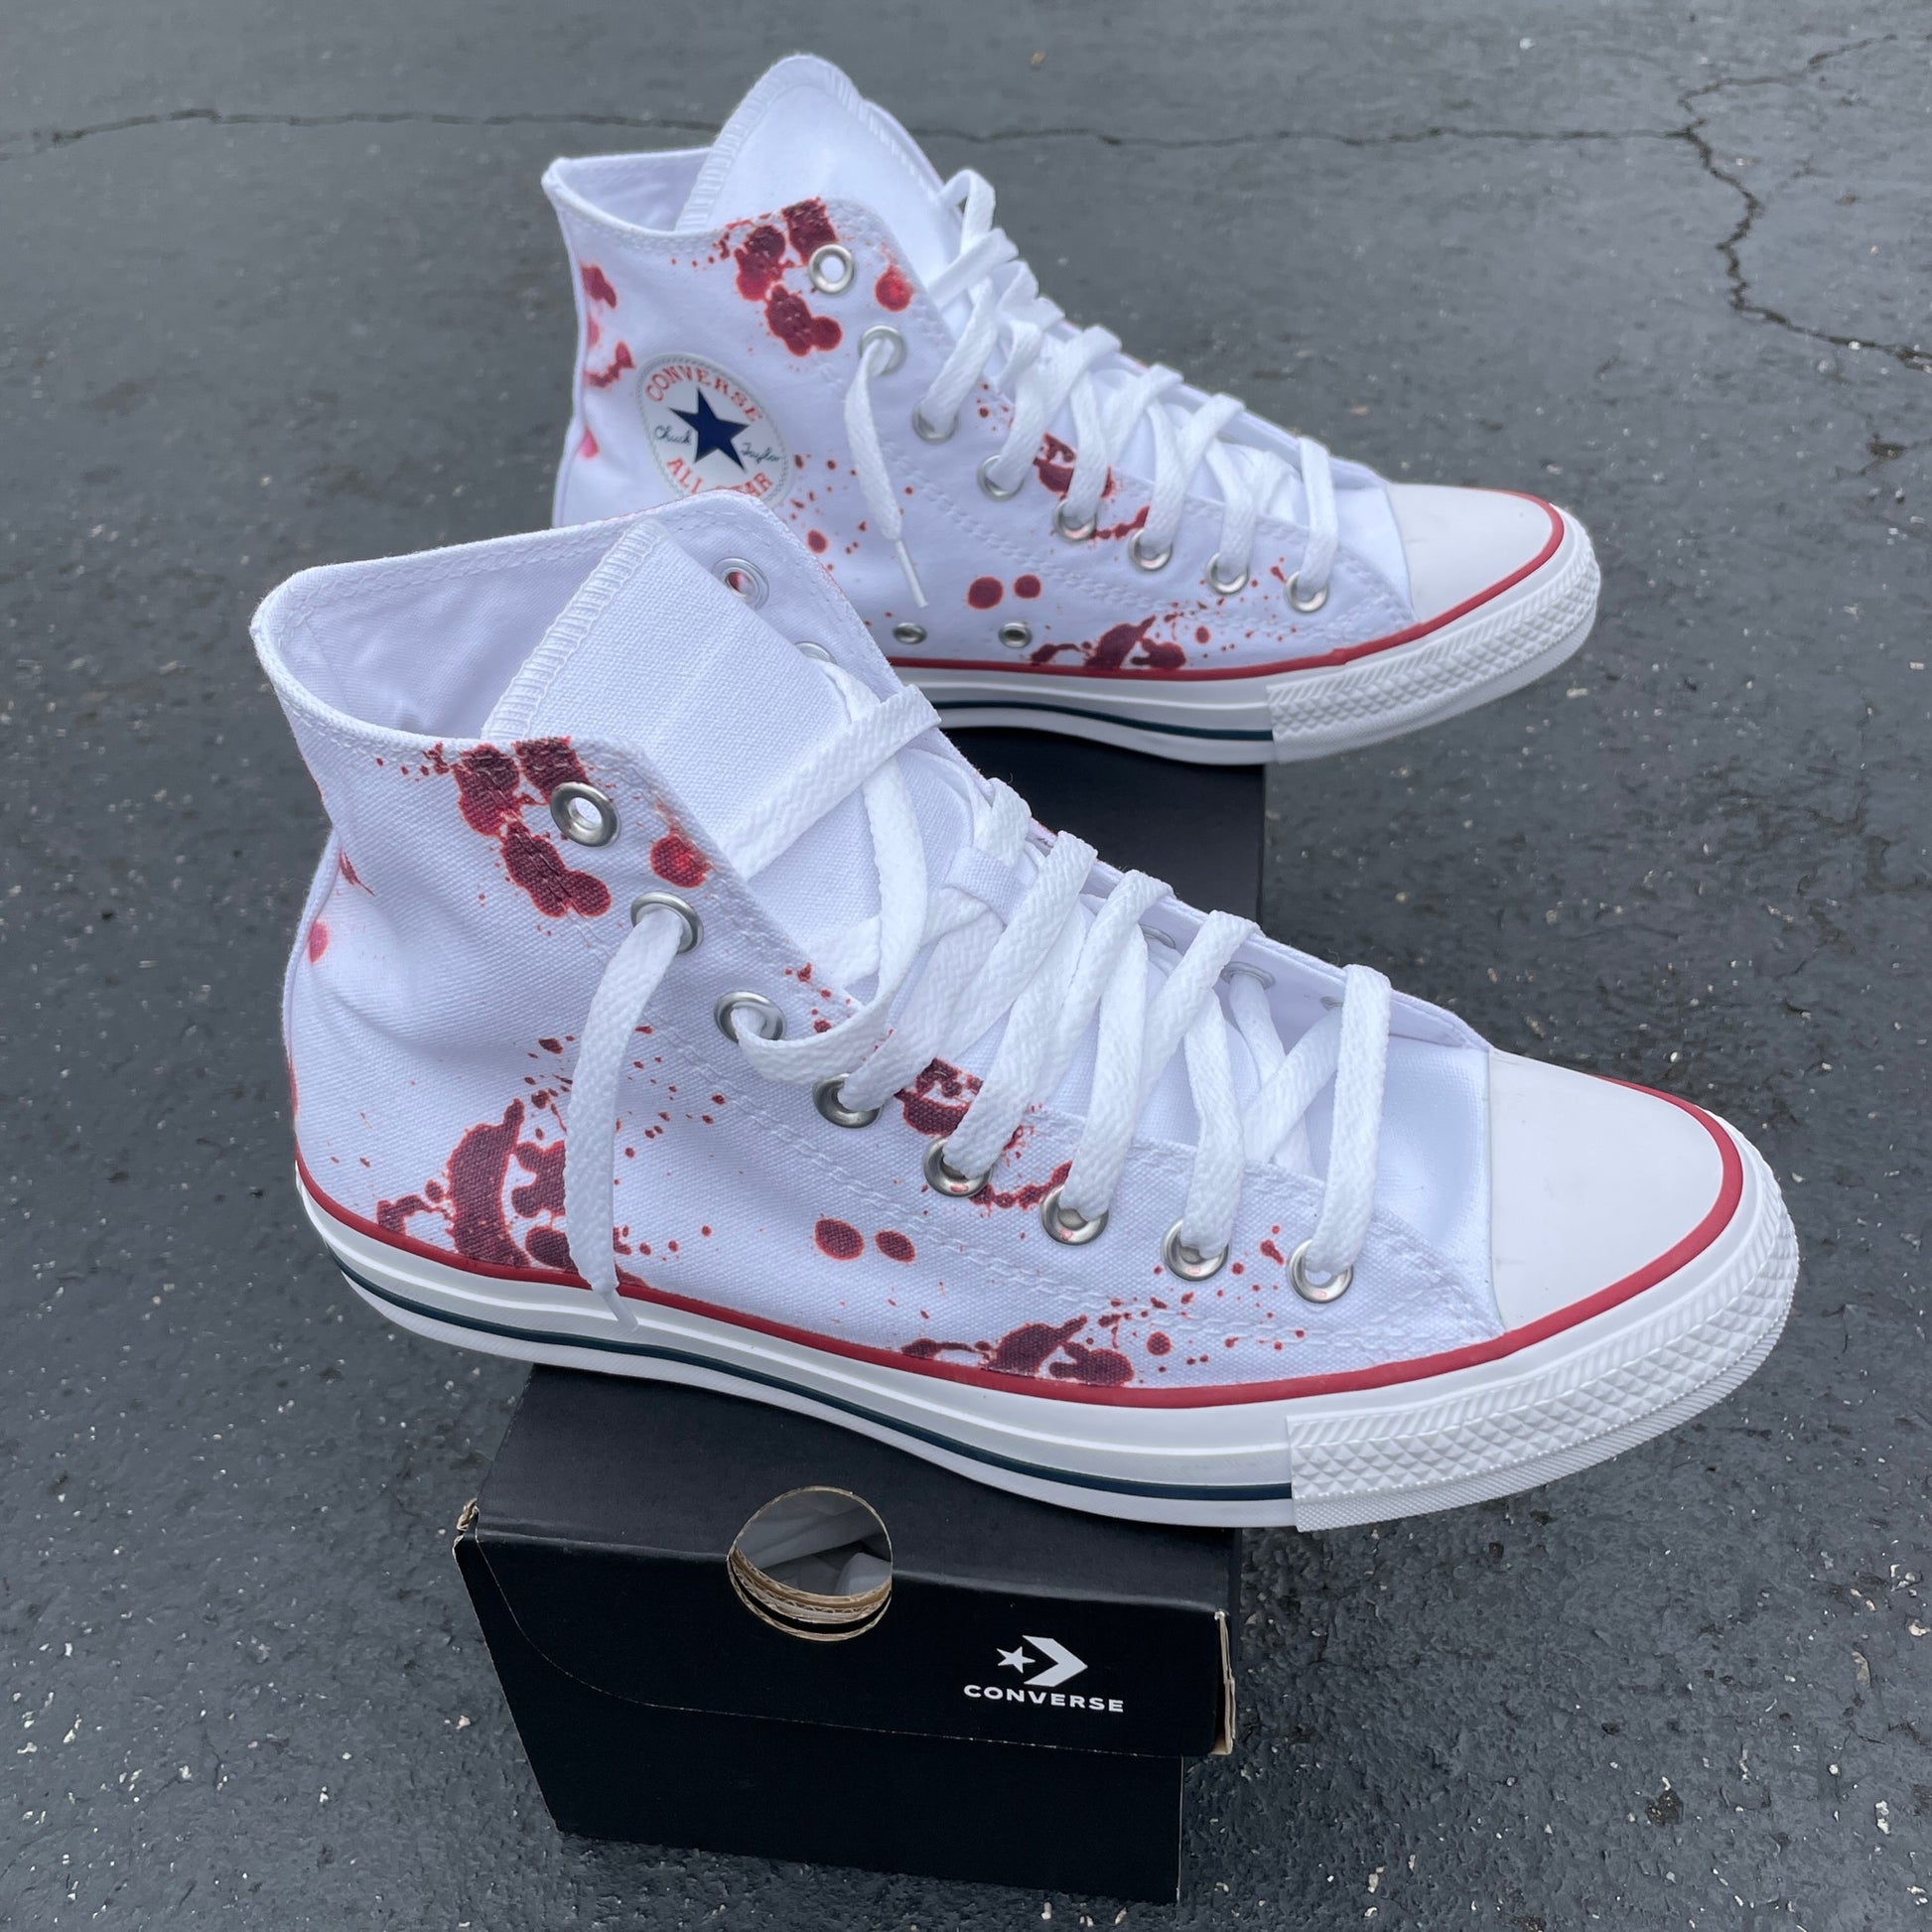 Blood Splatter White Tops - Sneakers - Custom Converse Shoes BlvdCustom